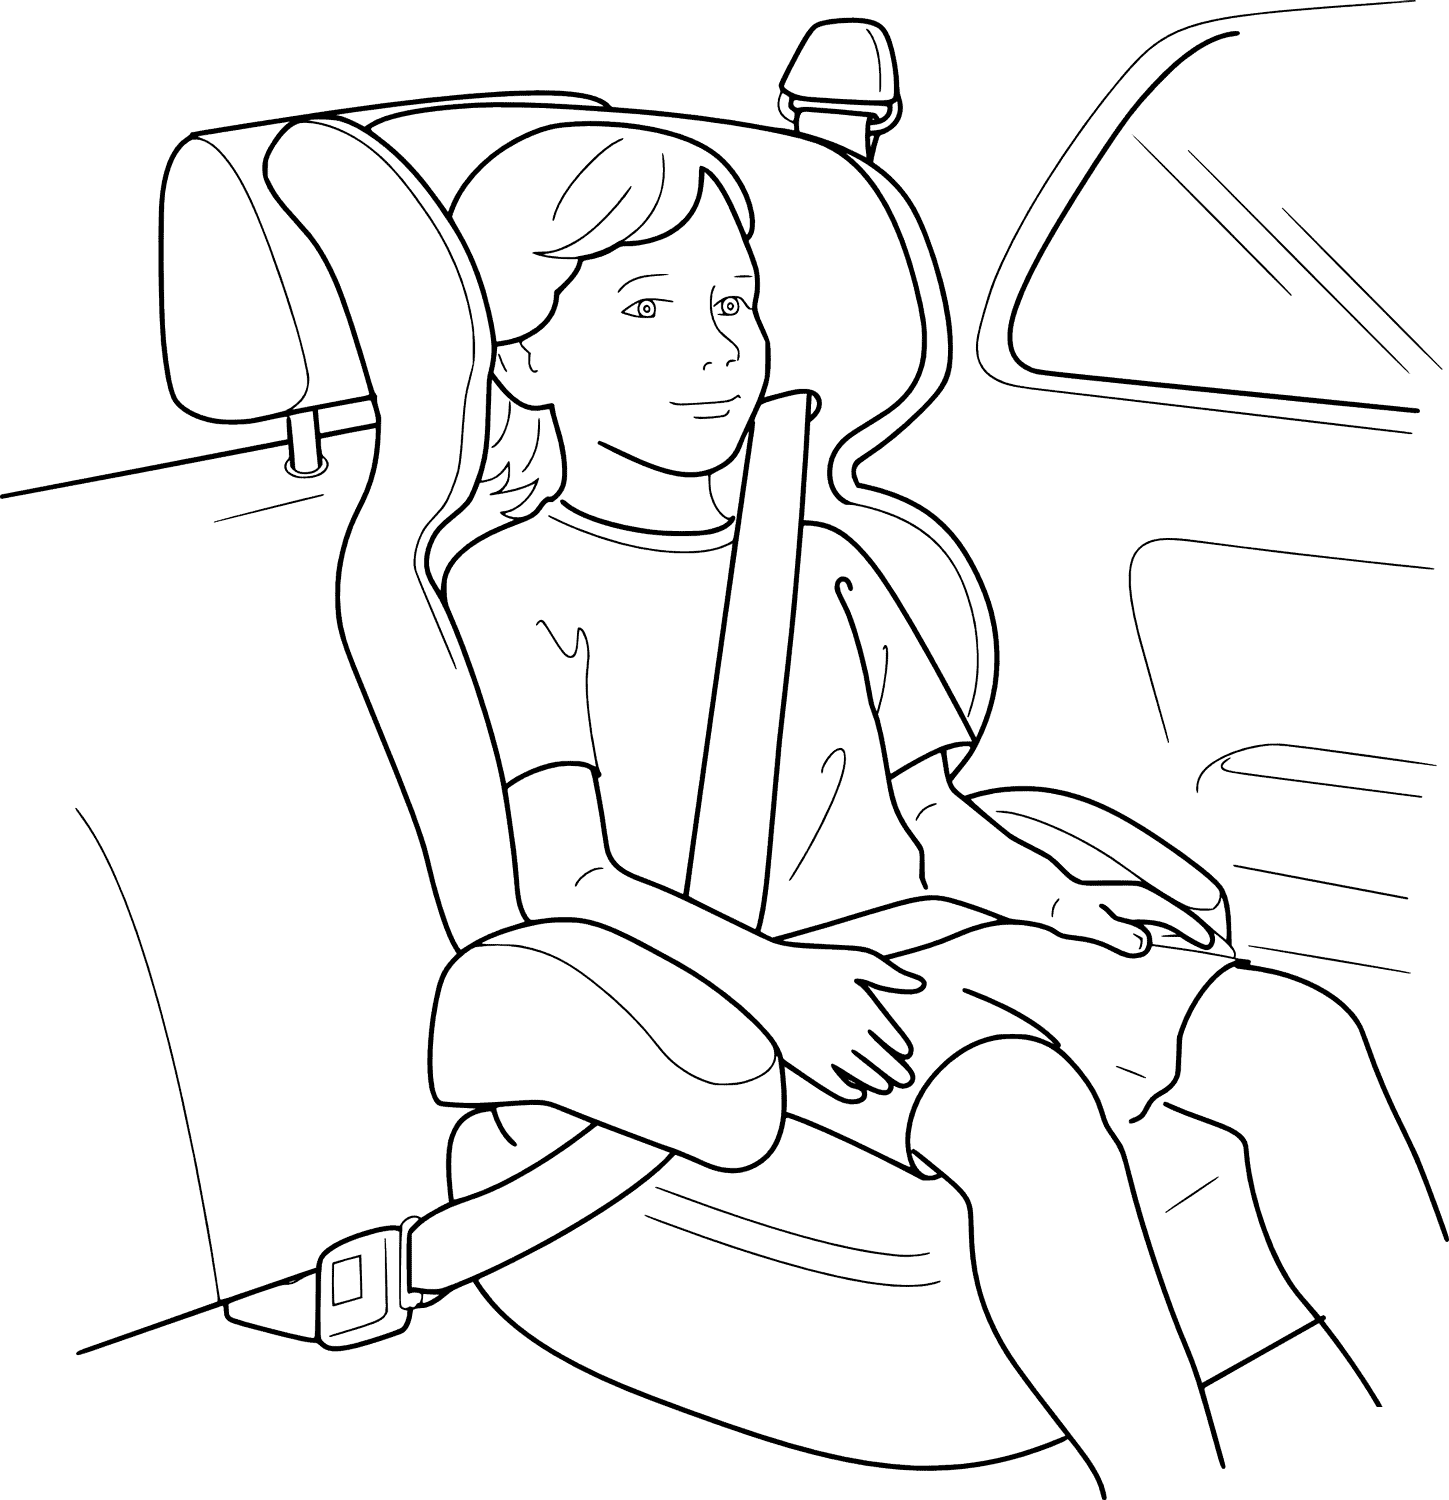   Boucler la ceinture pour la sécurité, voiture enfant 